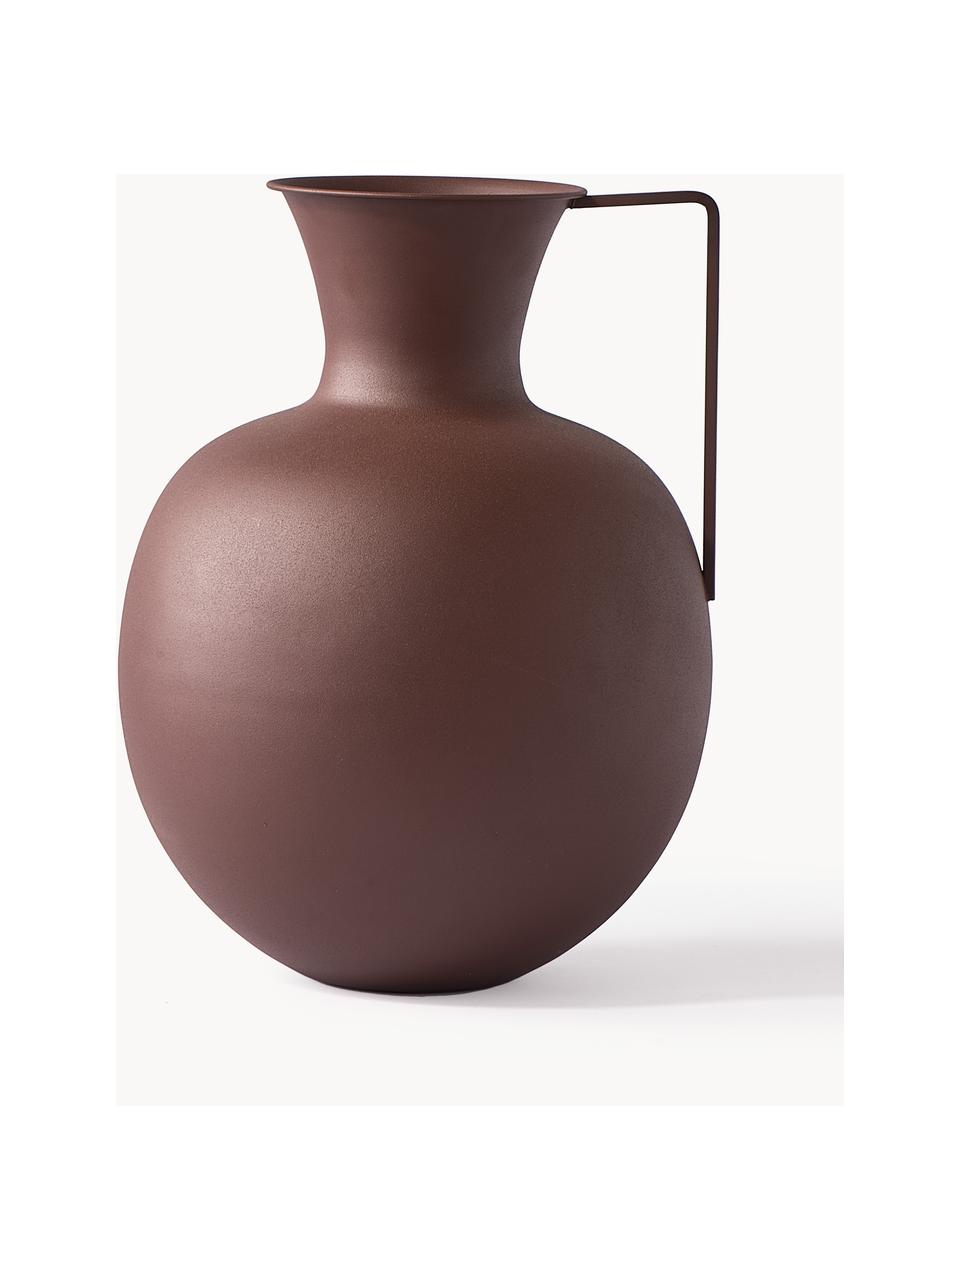 Ručne vyrobené dizajnové vázy Roman, 3 ks, Železo, práškový náter, Hrdzavá červená, béžová, hnedá, Súprava s rôznymi veľkosťami